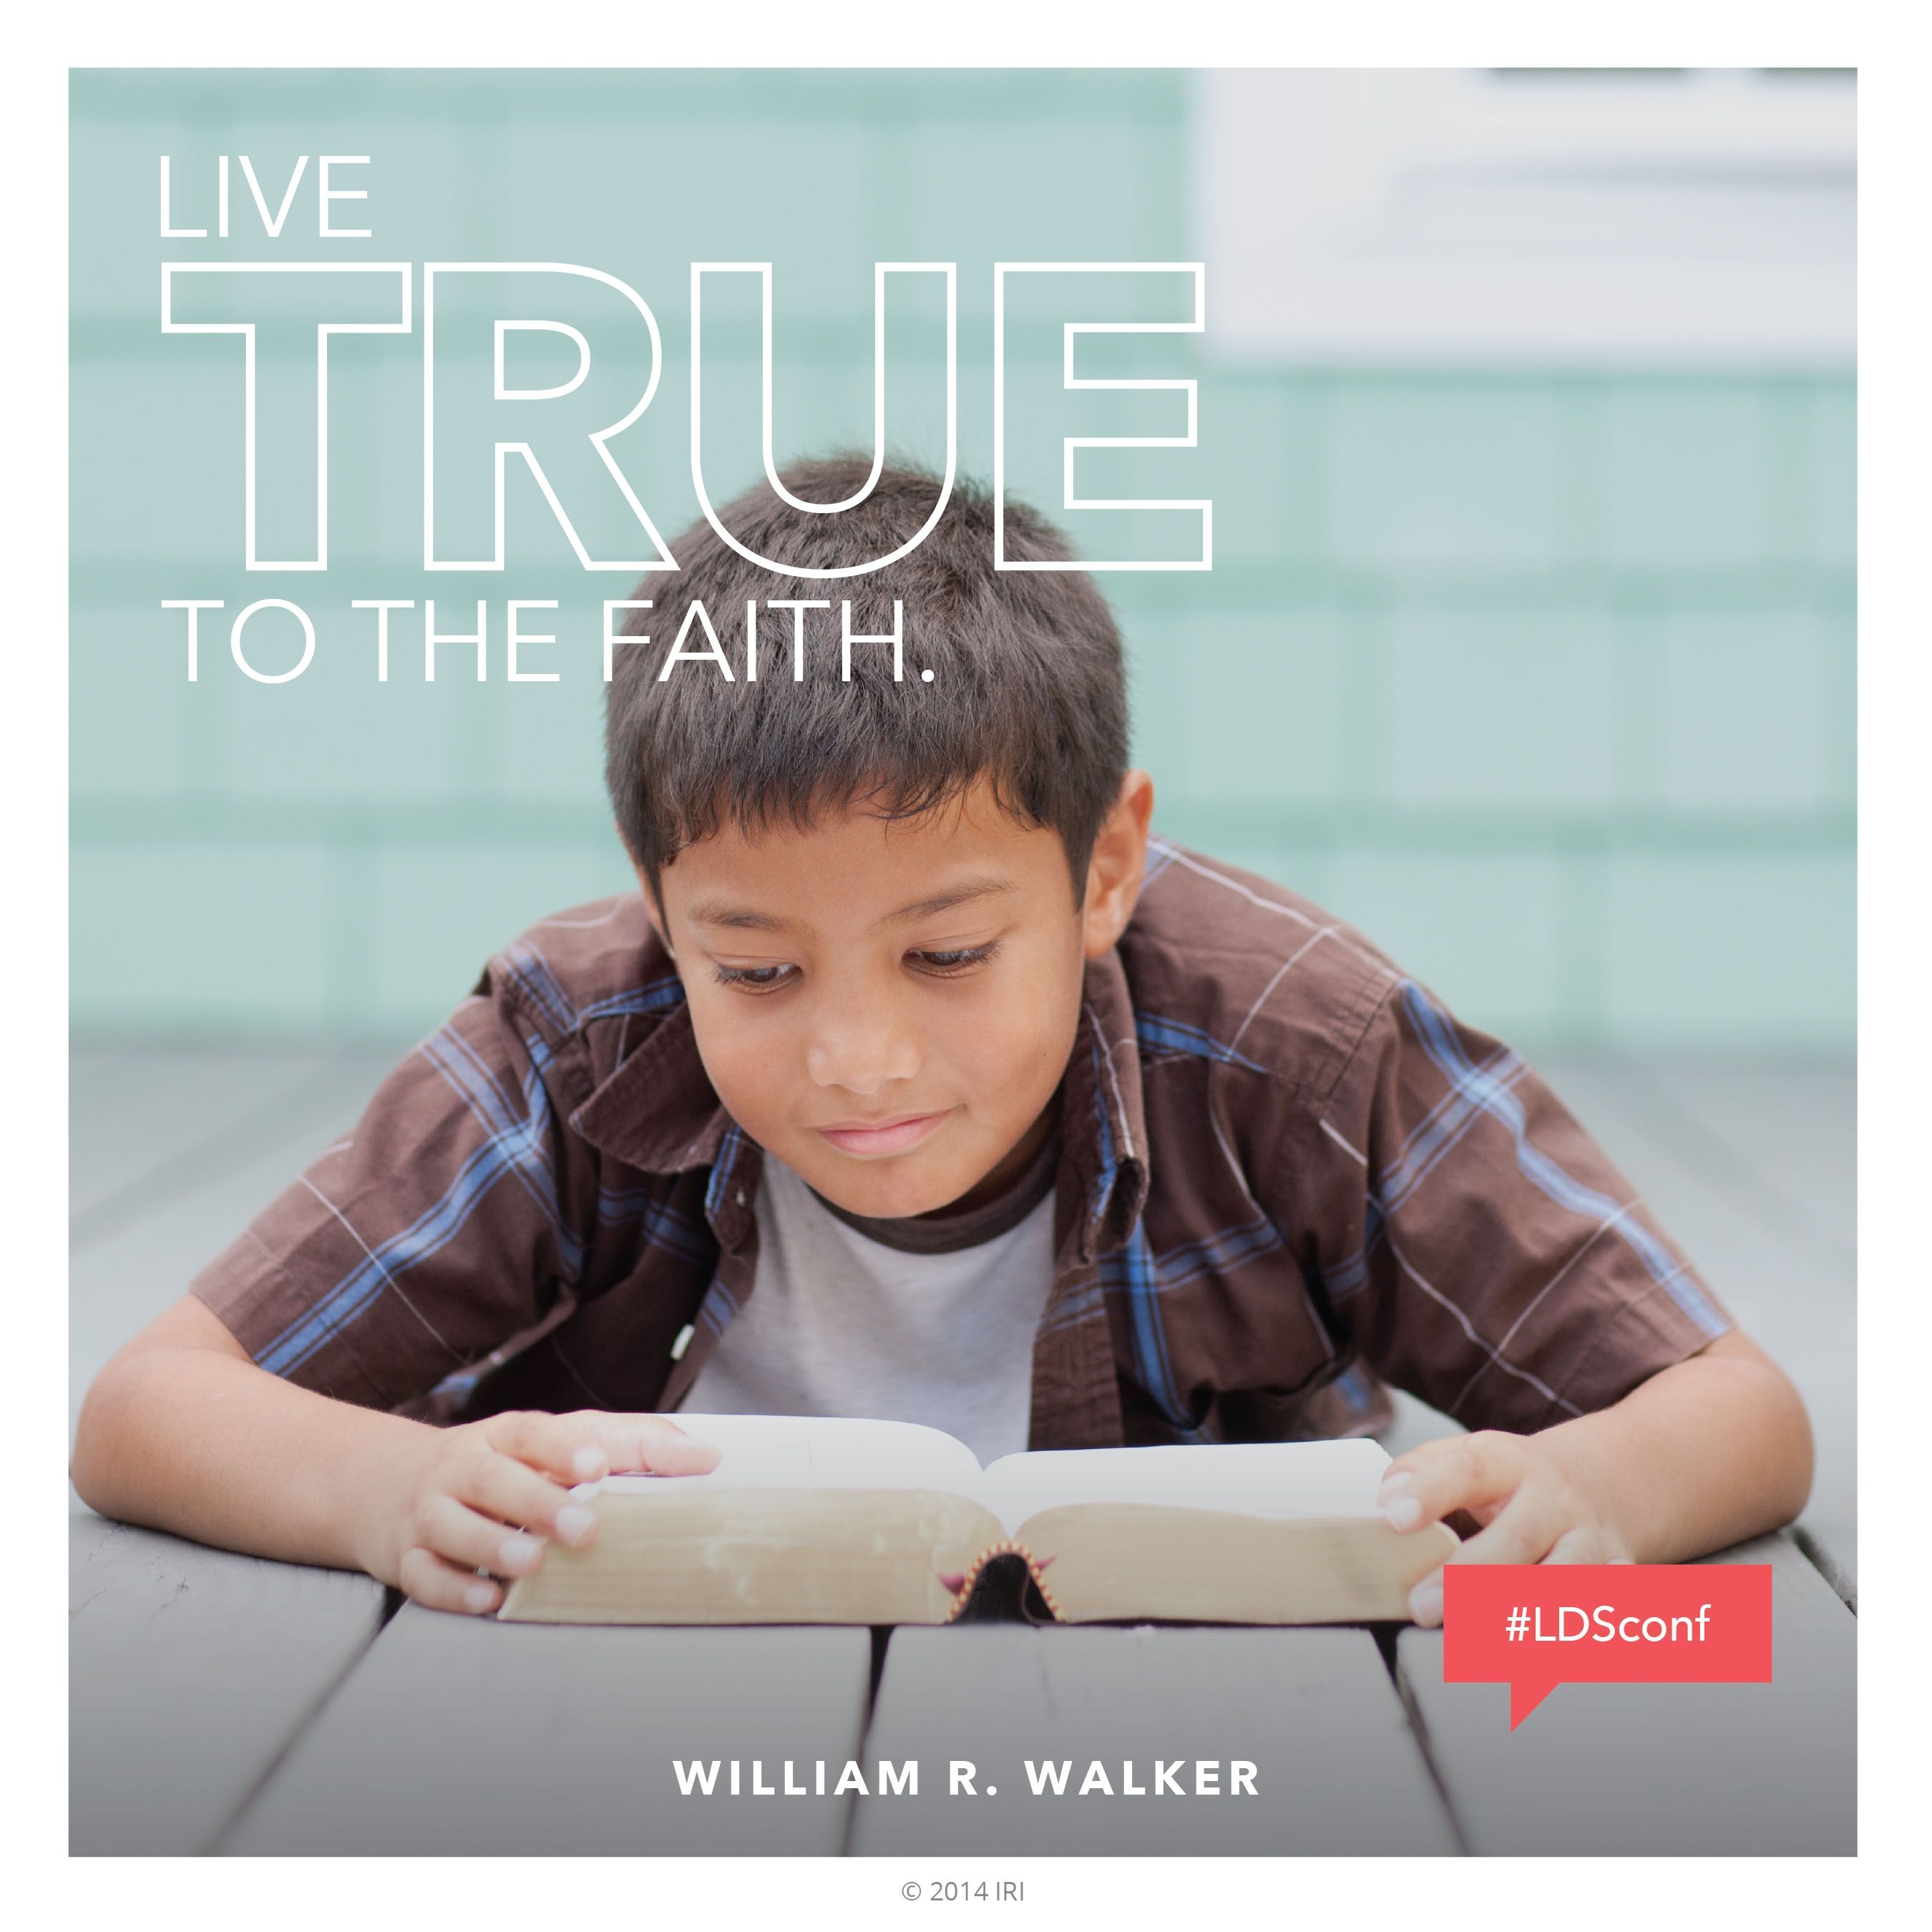 “Live true to the faith.”—Elder William R. Walker, “Live True to the Faith”